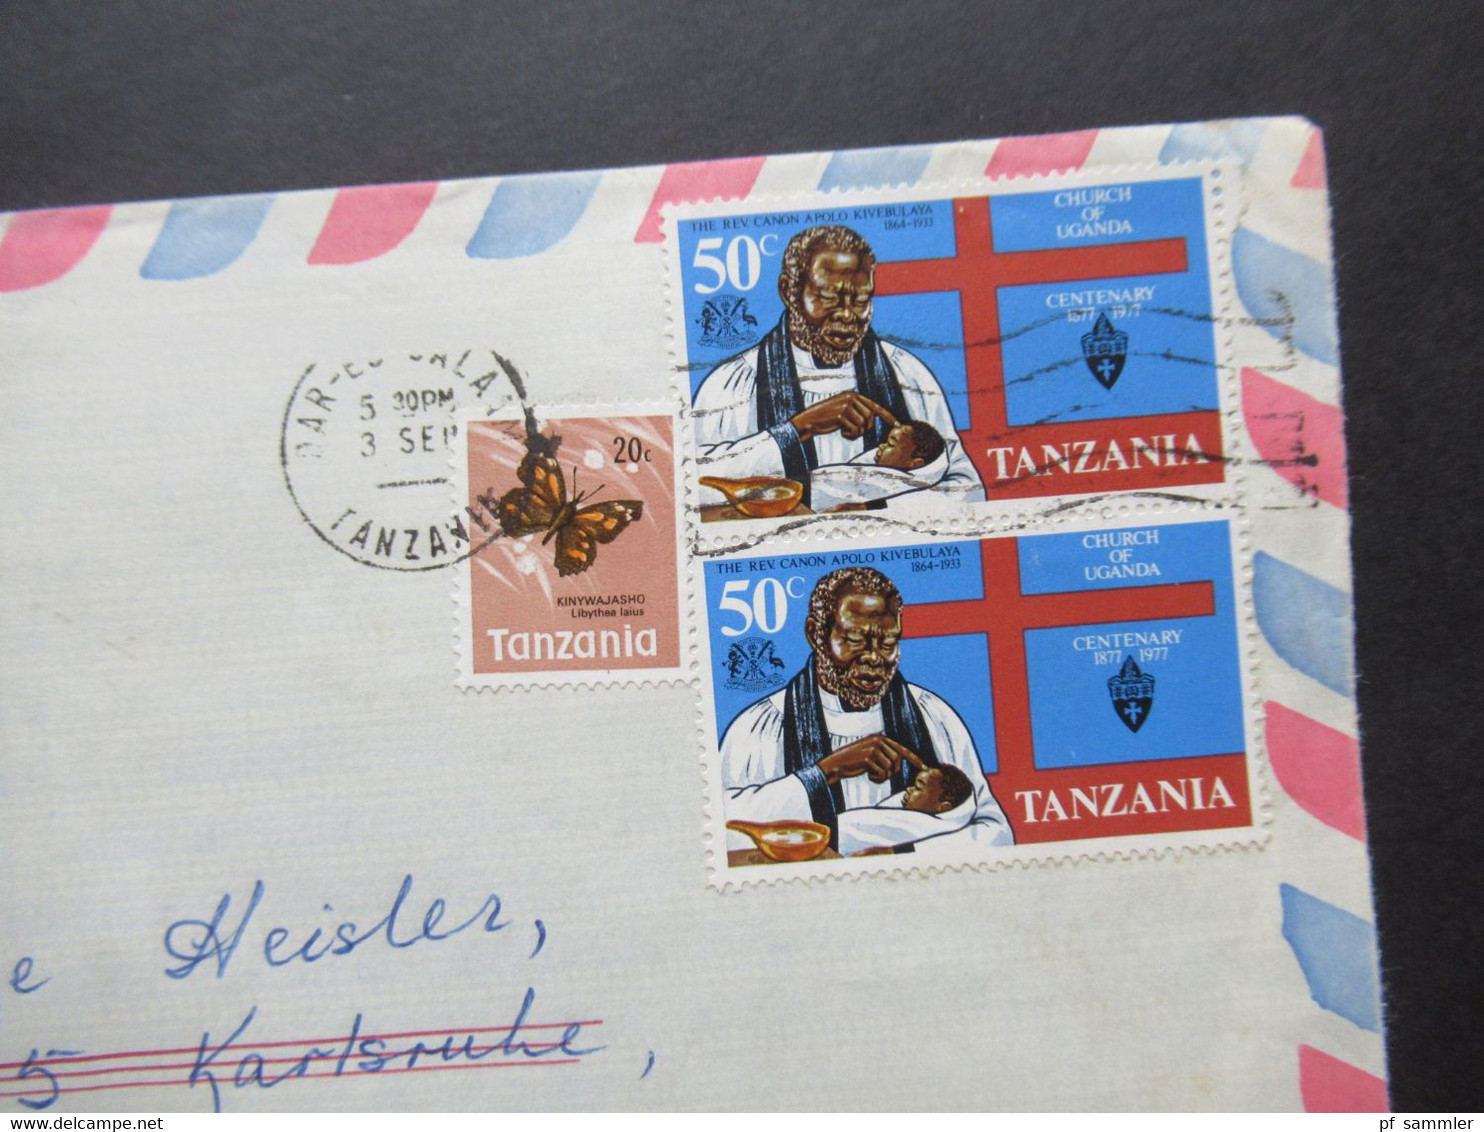 Afrika Tanzania Belegeposten 5 Stück 1970er Jahre / schöne Frankaturen / Air Mail / Luftpost